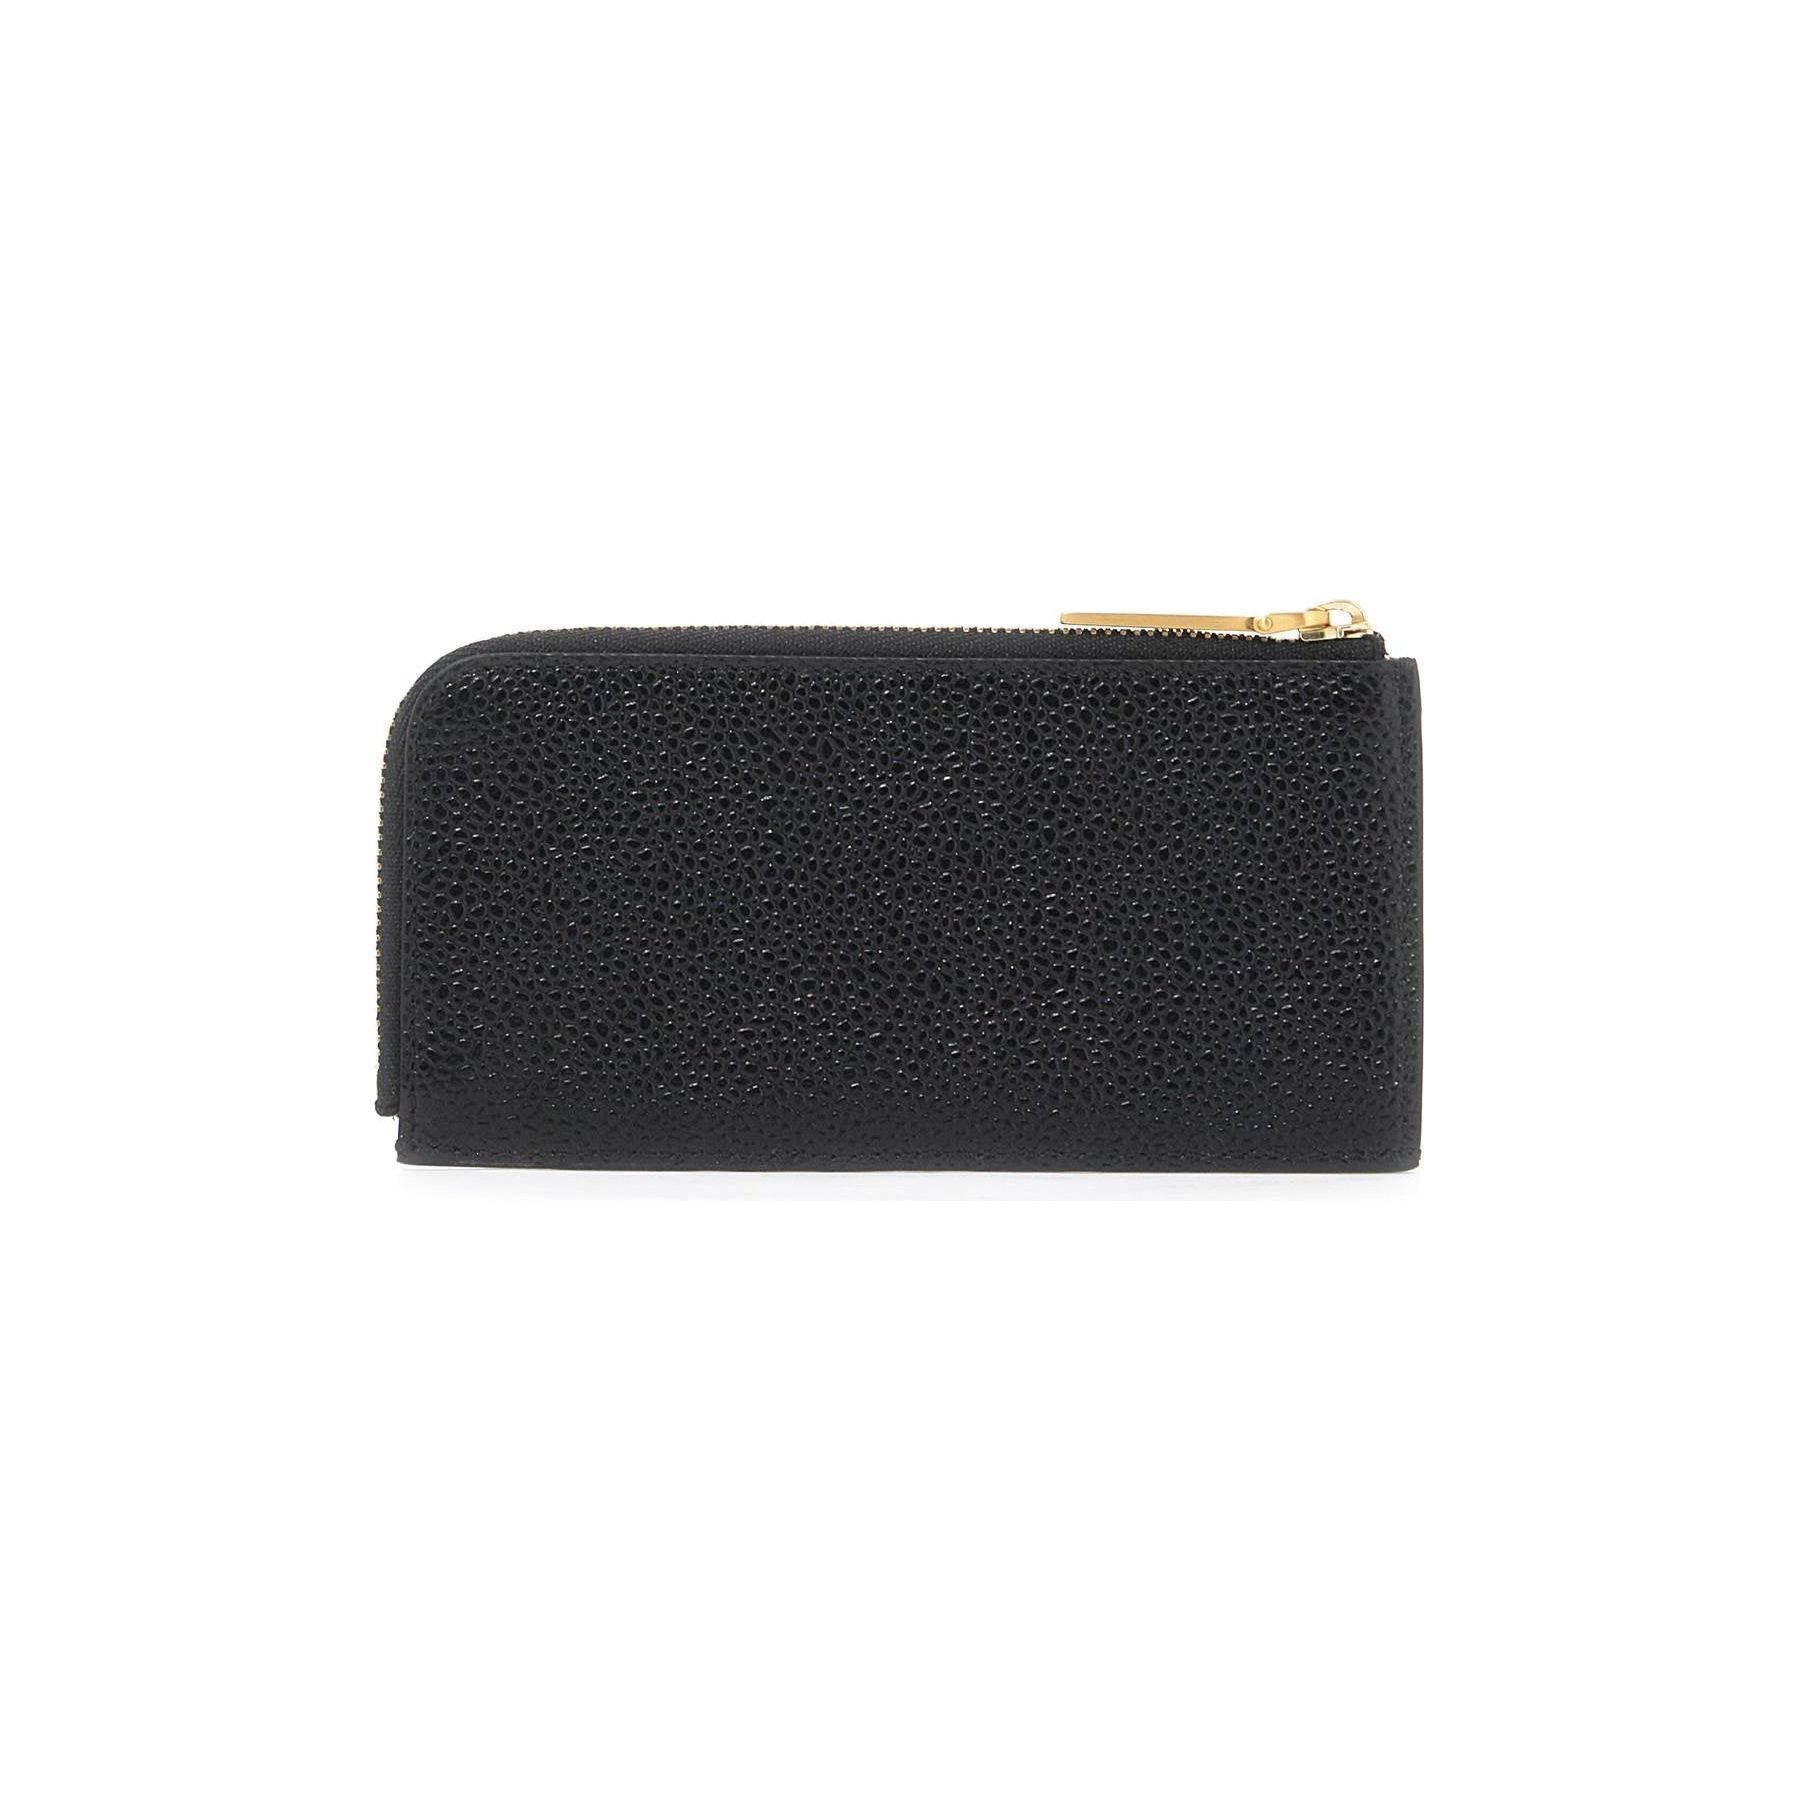 Pebble Grain Leather Half-Zip Wallet